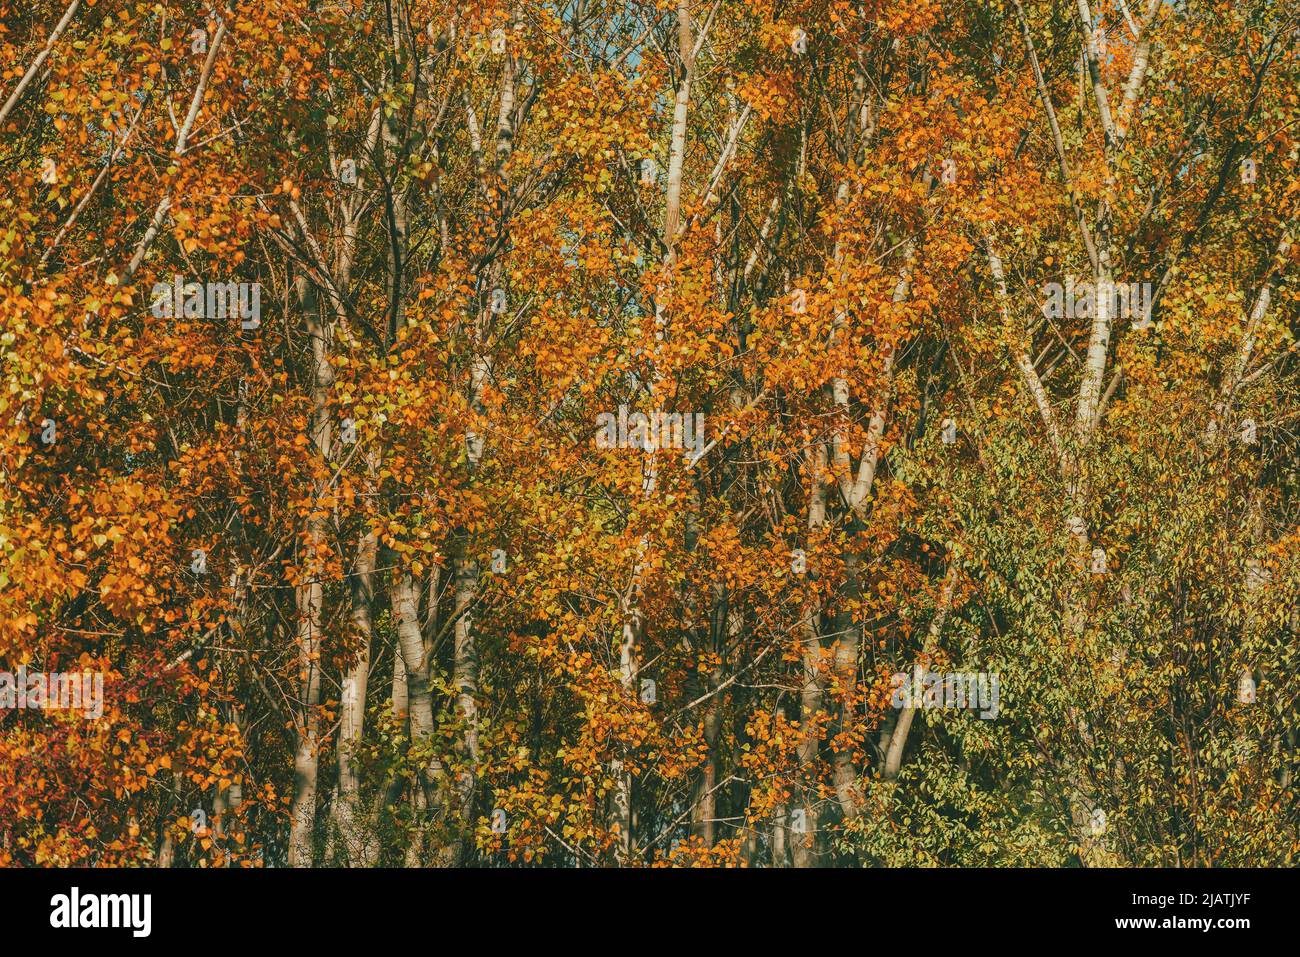 Saison d'automne et beauté dans la nature, beau paysage de forêt de peupliers en octobre, feuilles d'orange sur les grands arbres Banque D'Images